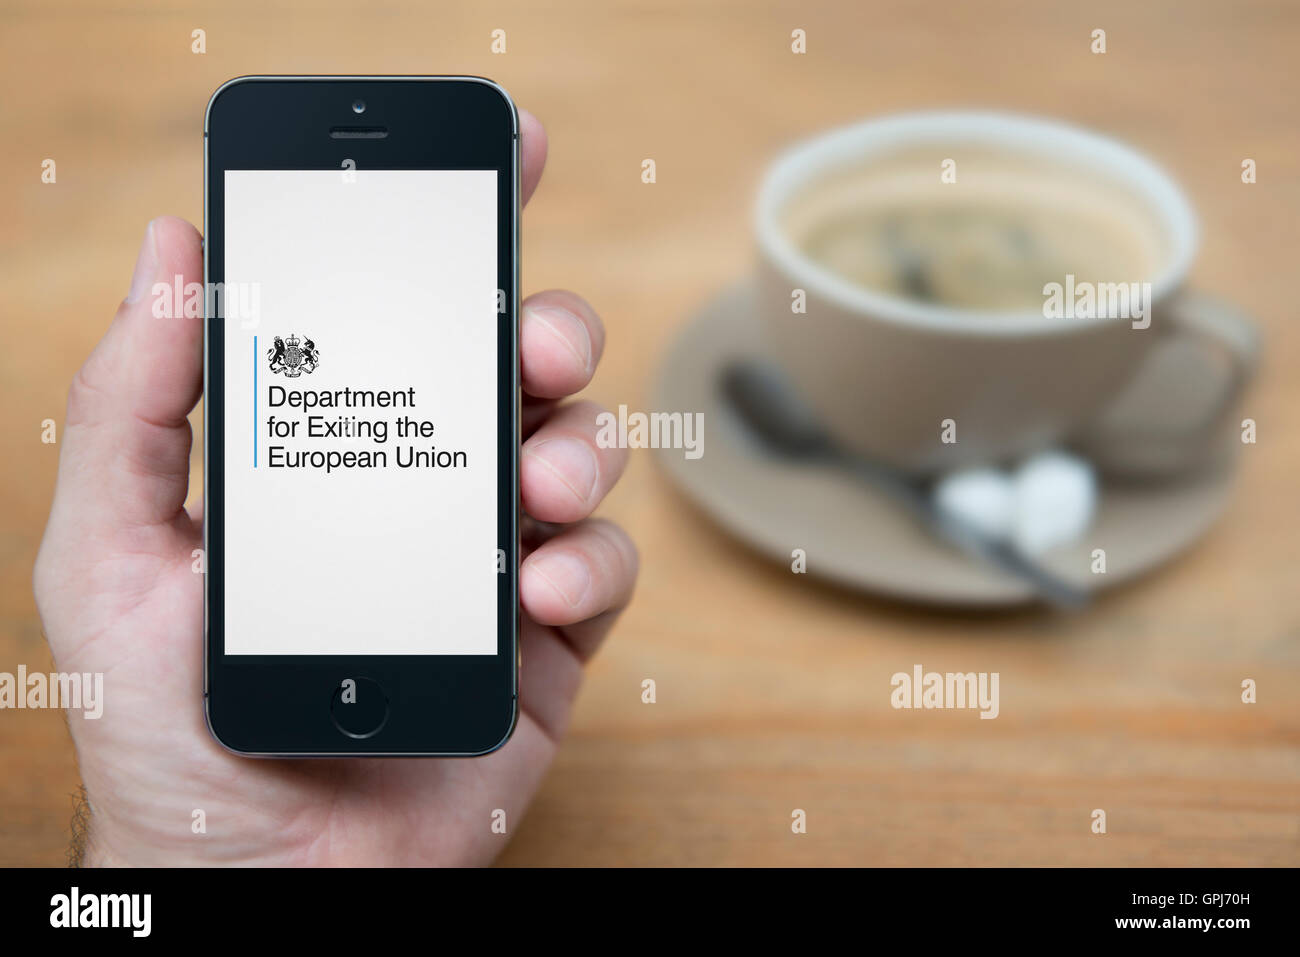 Un hombre mira su iPhone que muestra el departamento del Gobierno del Reino Unido para salir de la Unión Europea logotipo (uso Editorial solamente). Foto de stock